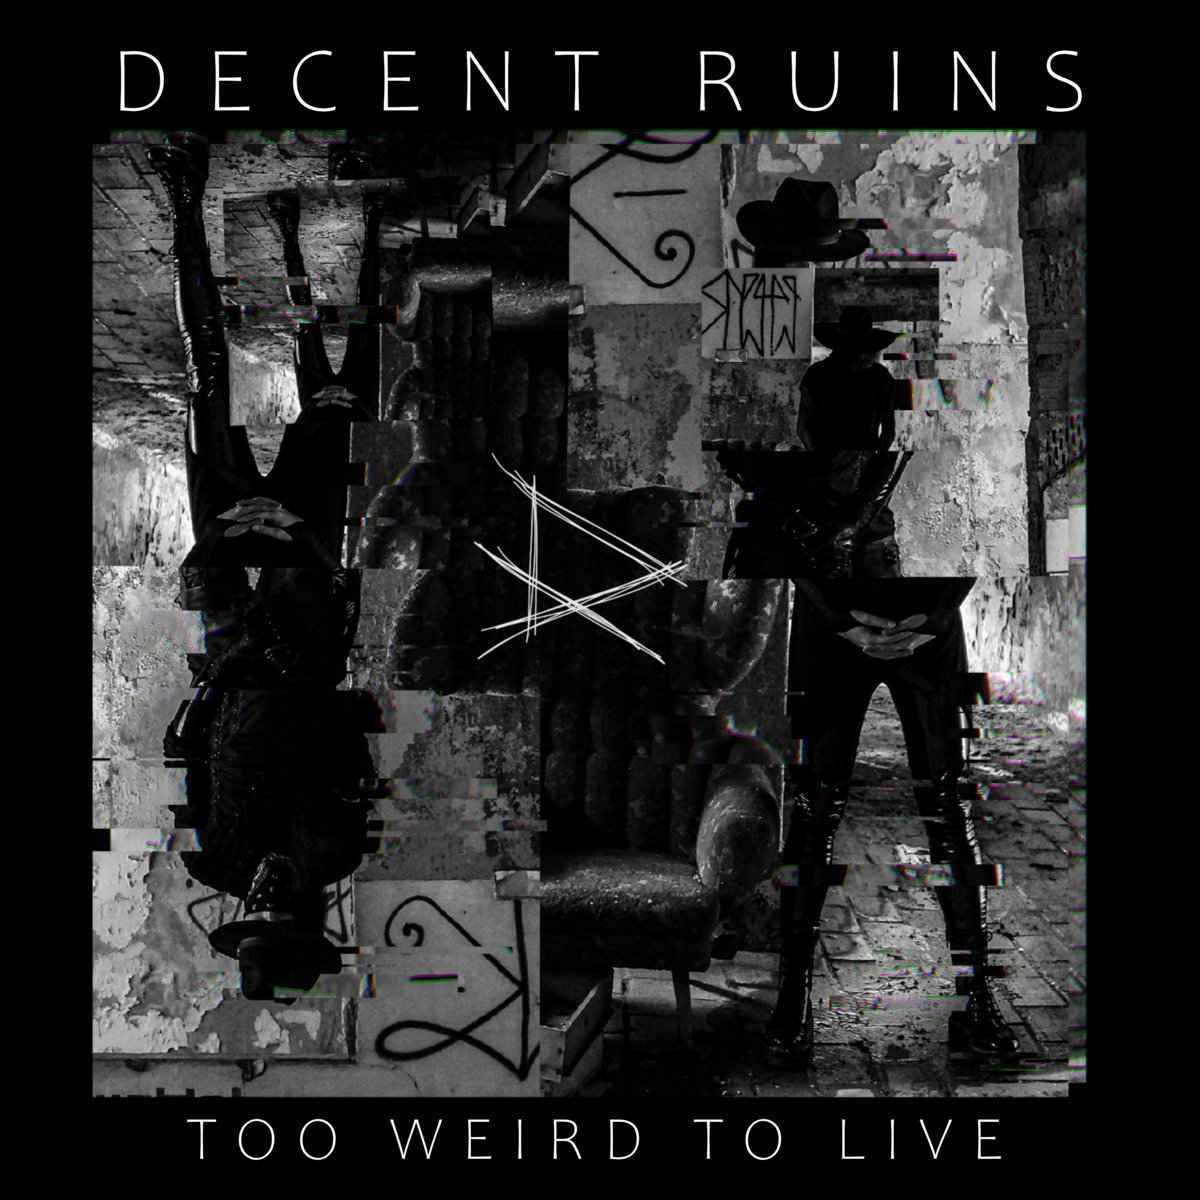 Decent Ruins, “Too Weird To Live”